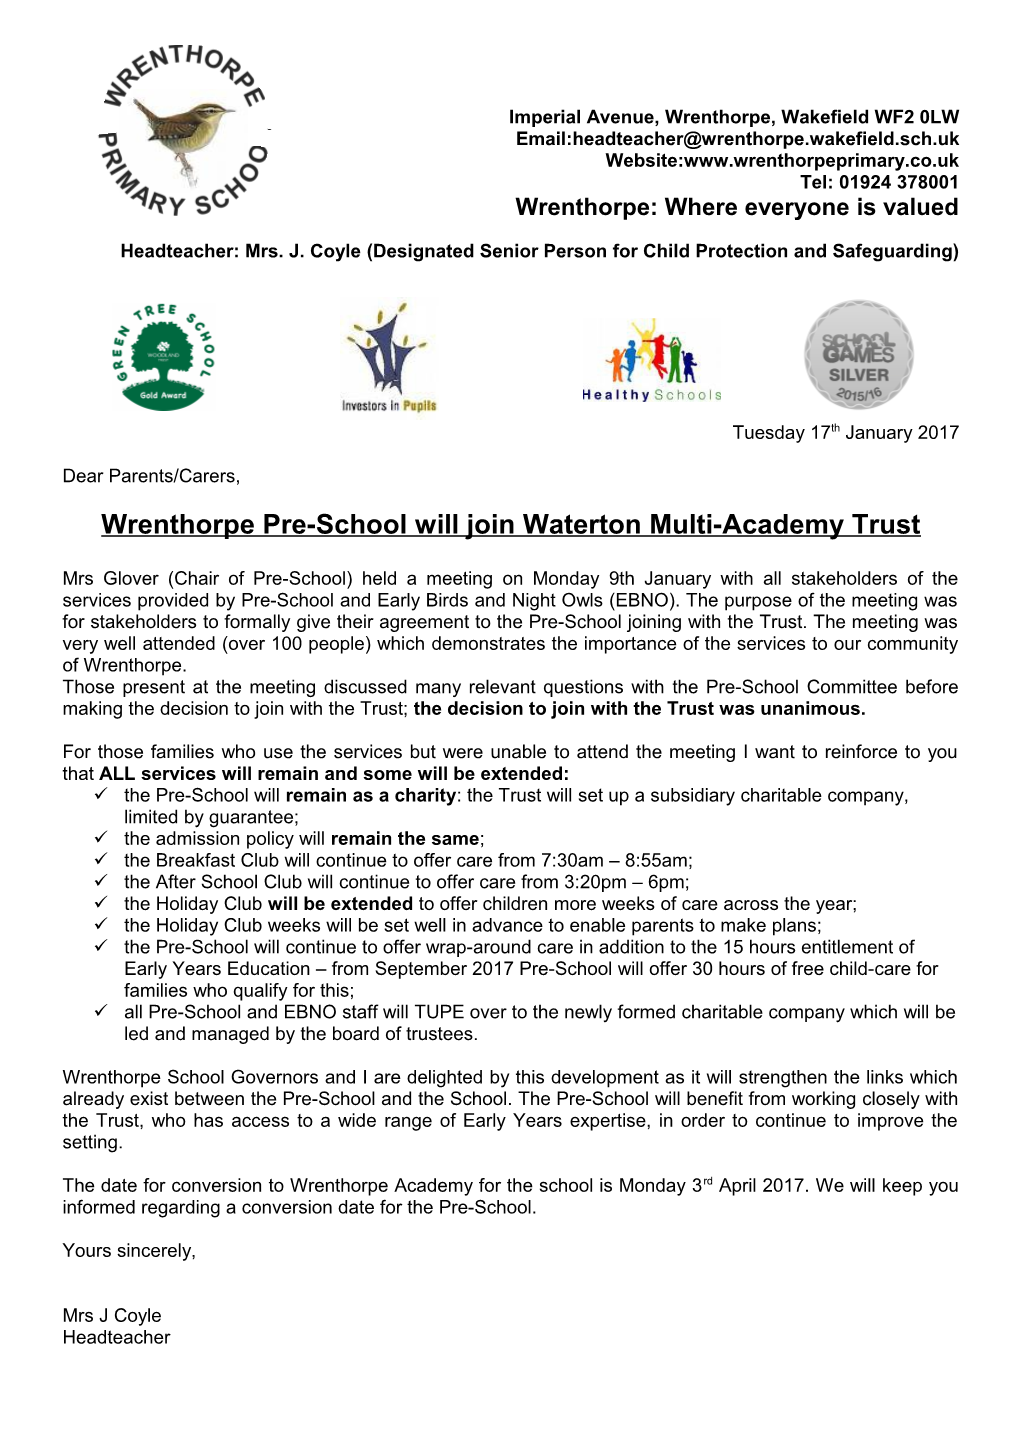 Wrenthorpe Primary School